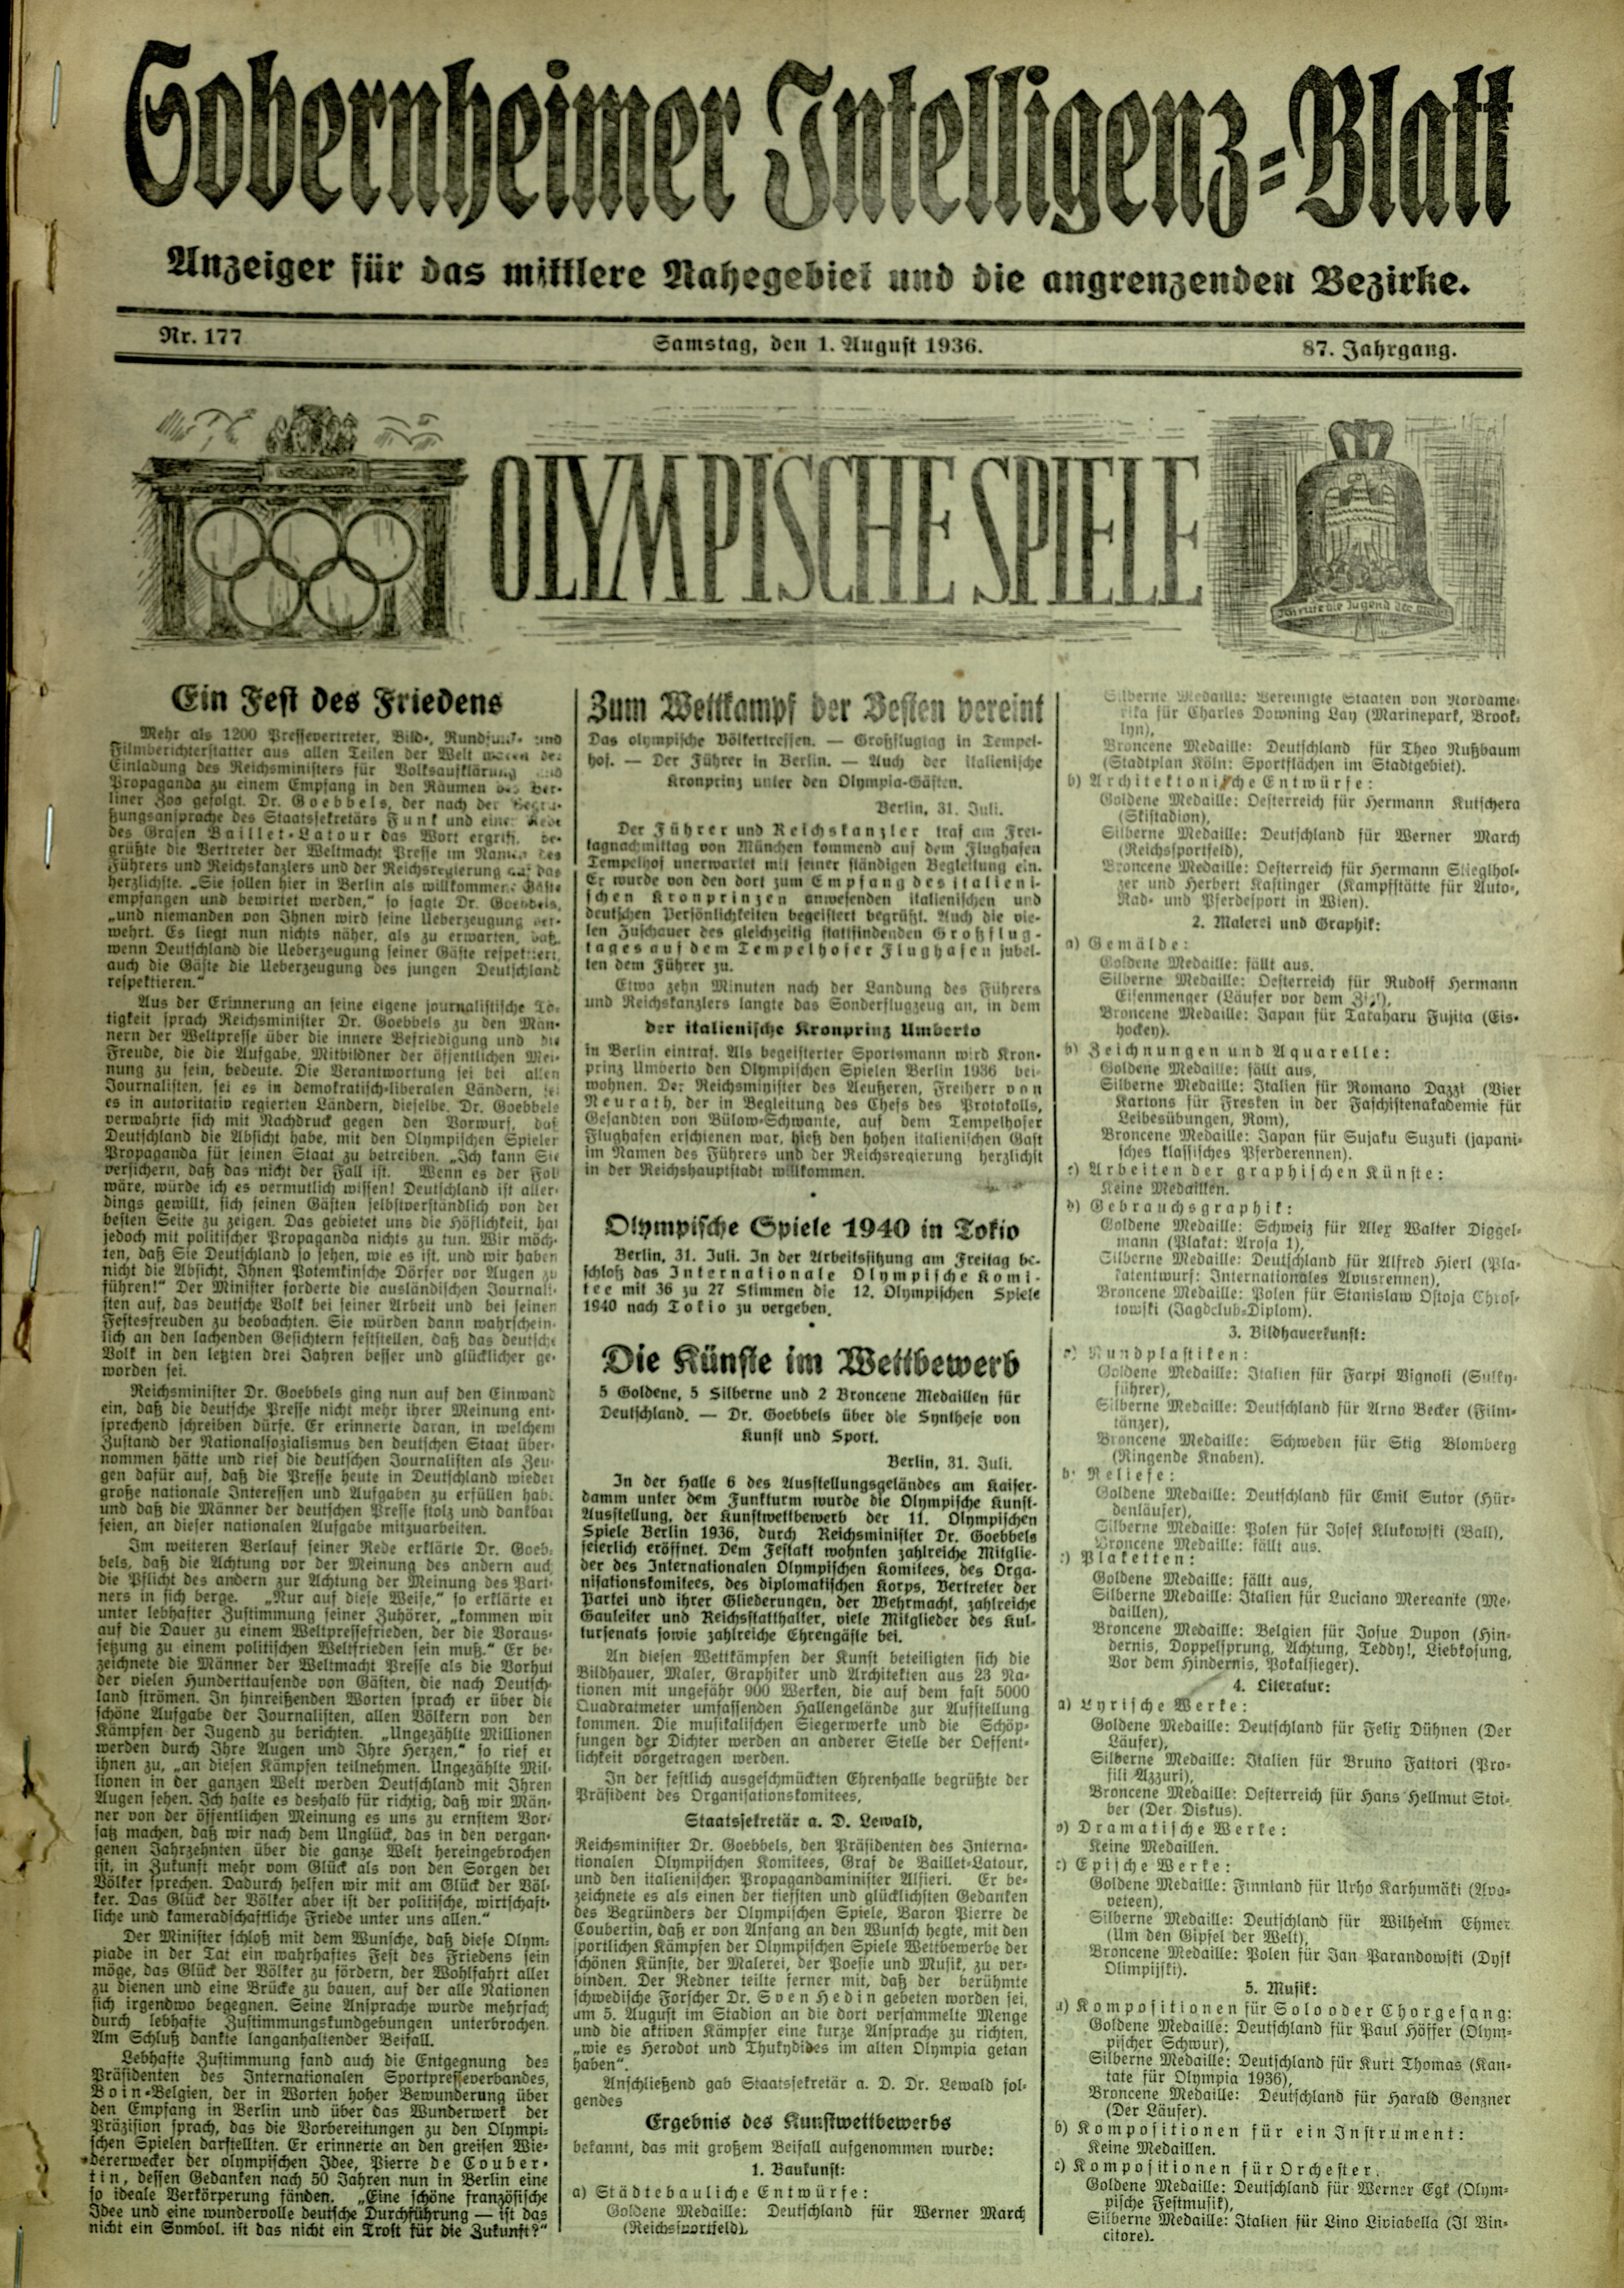 Zeitung: Sobernheimer Intelligenzblatt; August 1936 , Jg. 87, Nr. 177 (Heimatmuseum Bad Sobernheim CC BY-NC-SA)